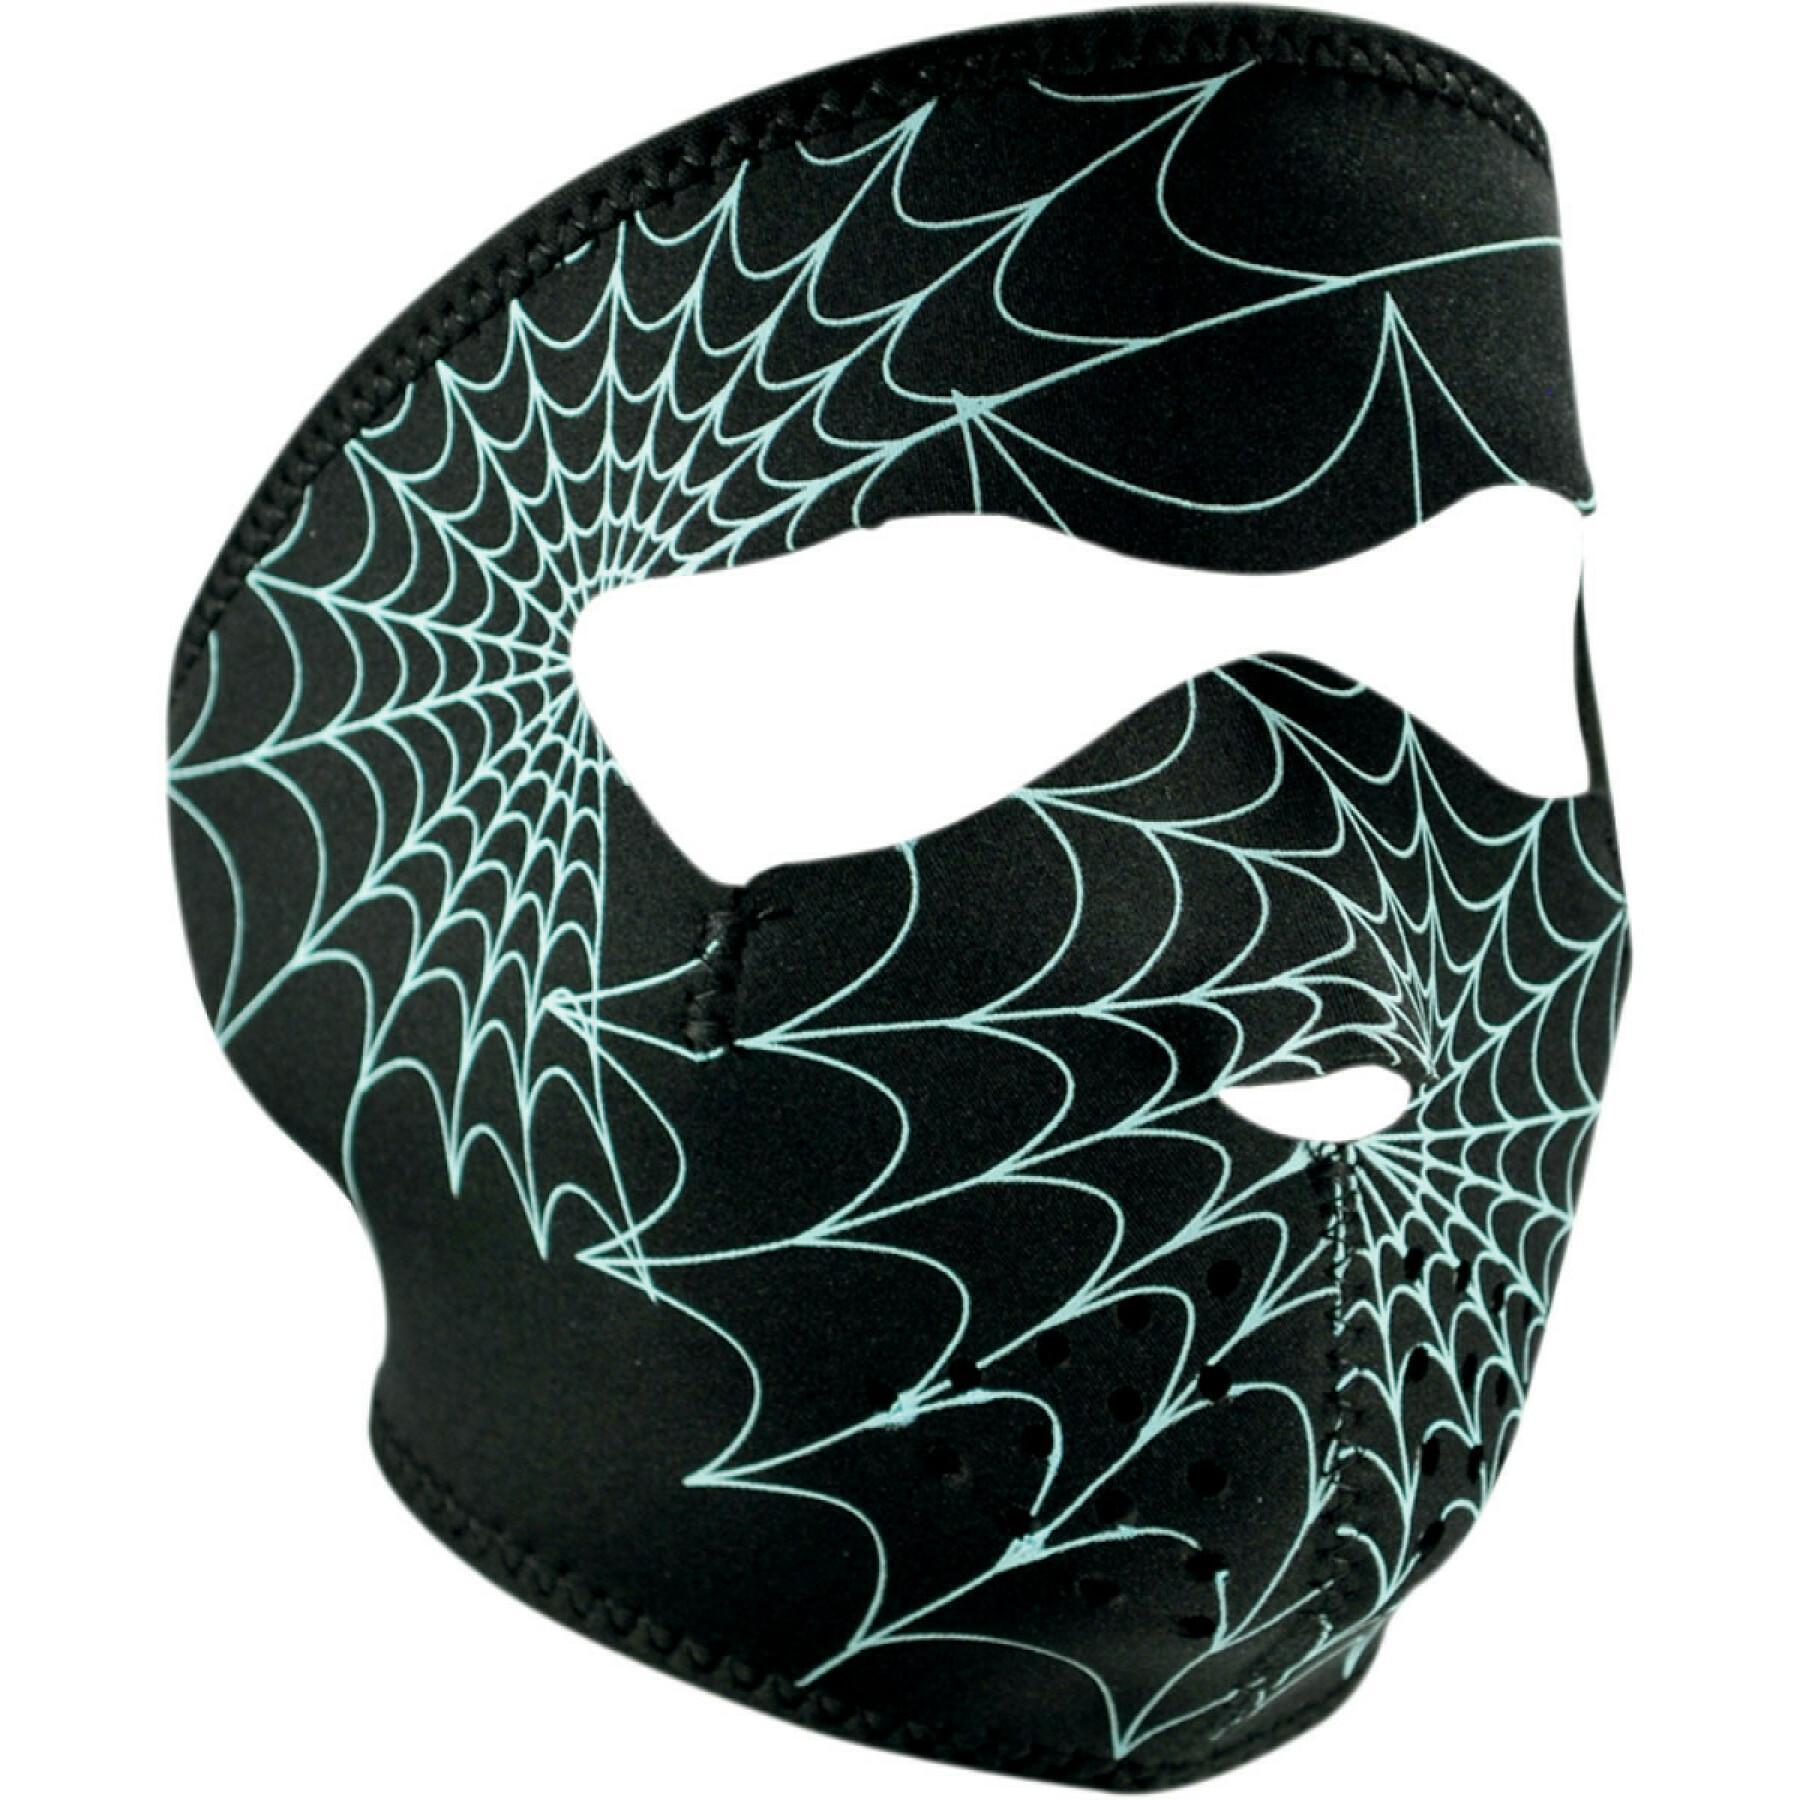 Motos balaclava Zan Headgear full face glow-in-the-dark spider web